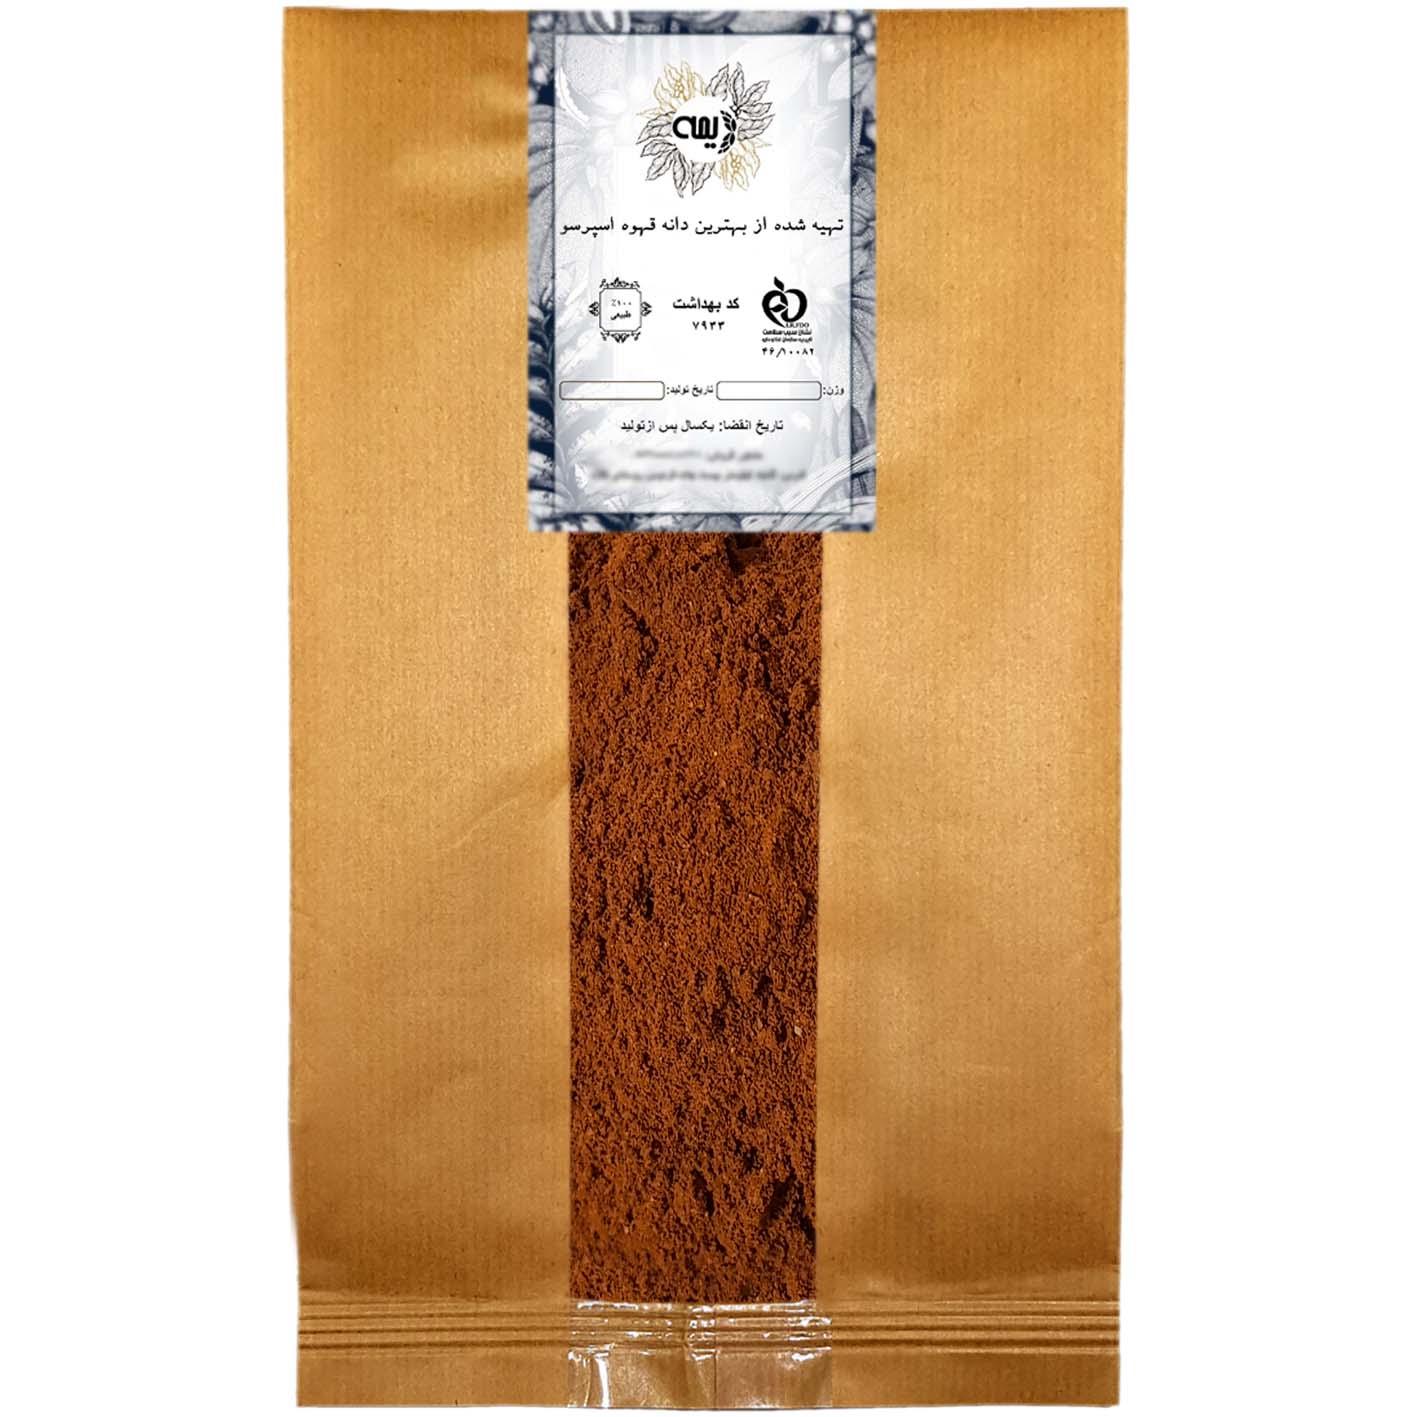 پودر قهوه دارک 80%روبوستا 20%عربیکا دیمه - 1 کیلوگرم